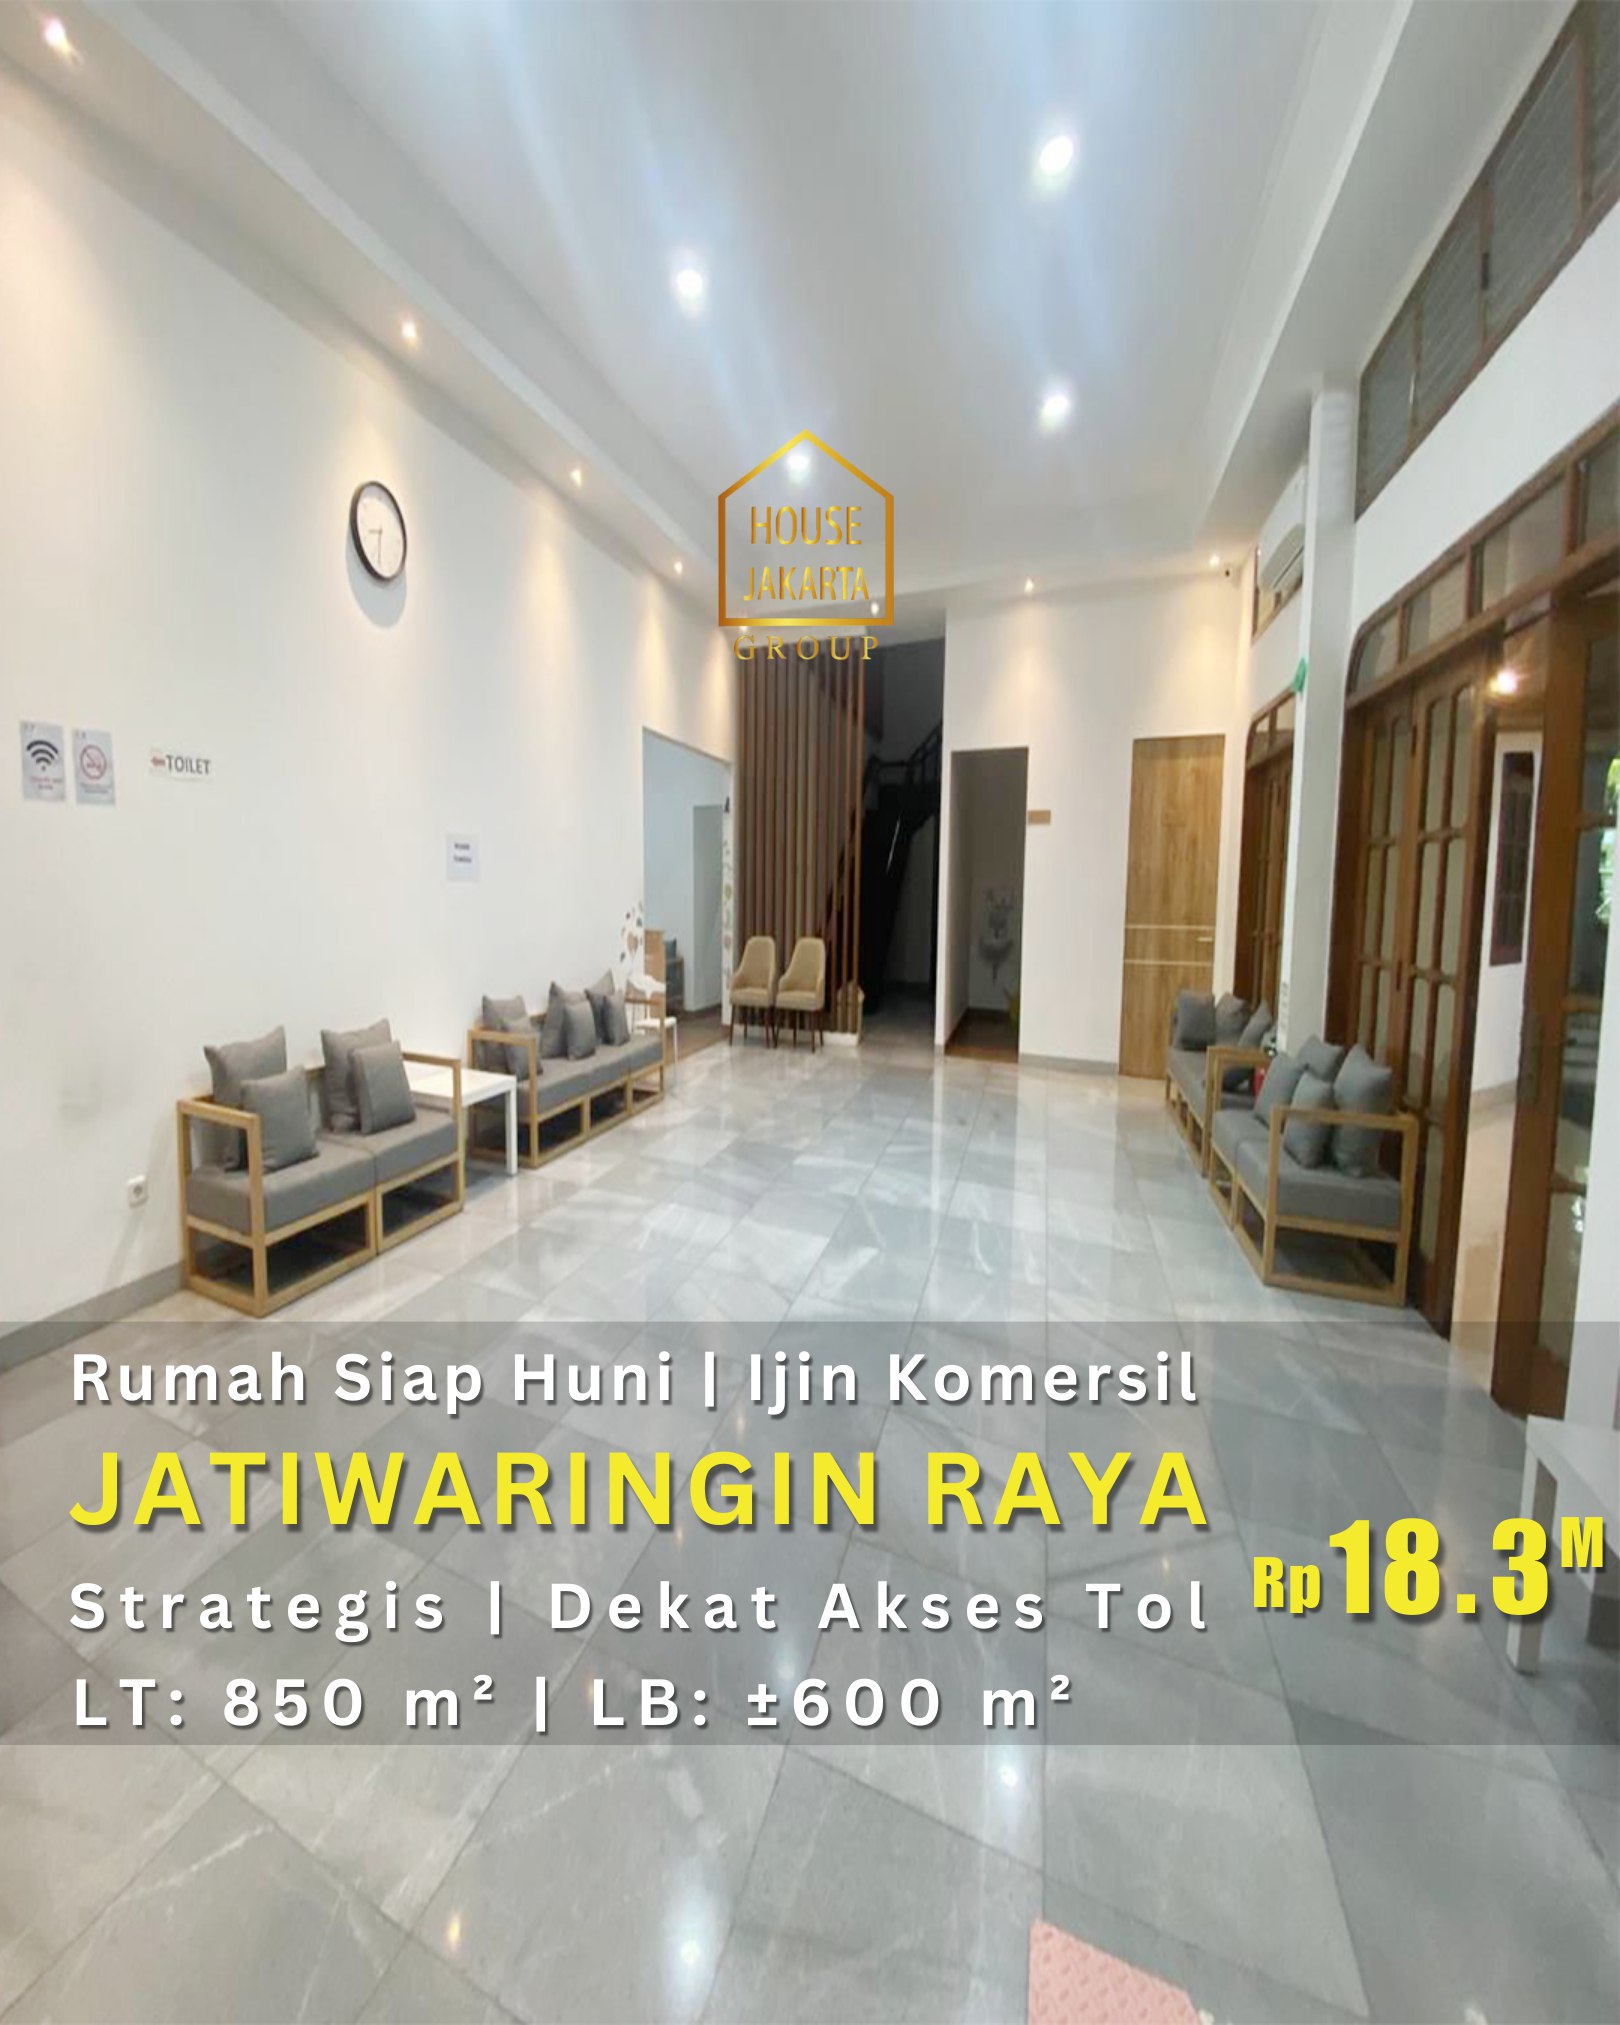  Rumah Siap Huni Jatiwaringin Raya, Ijin Komersial Strategis Dekat Akses Tol